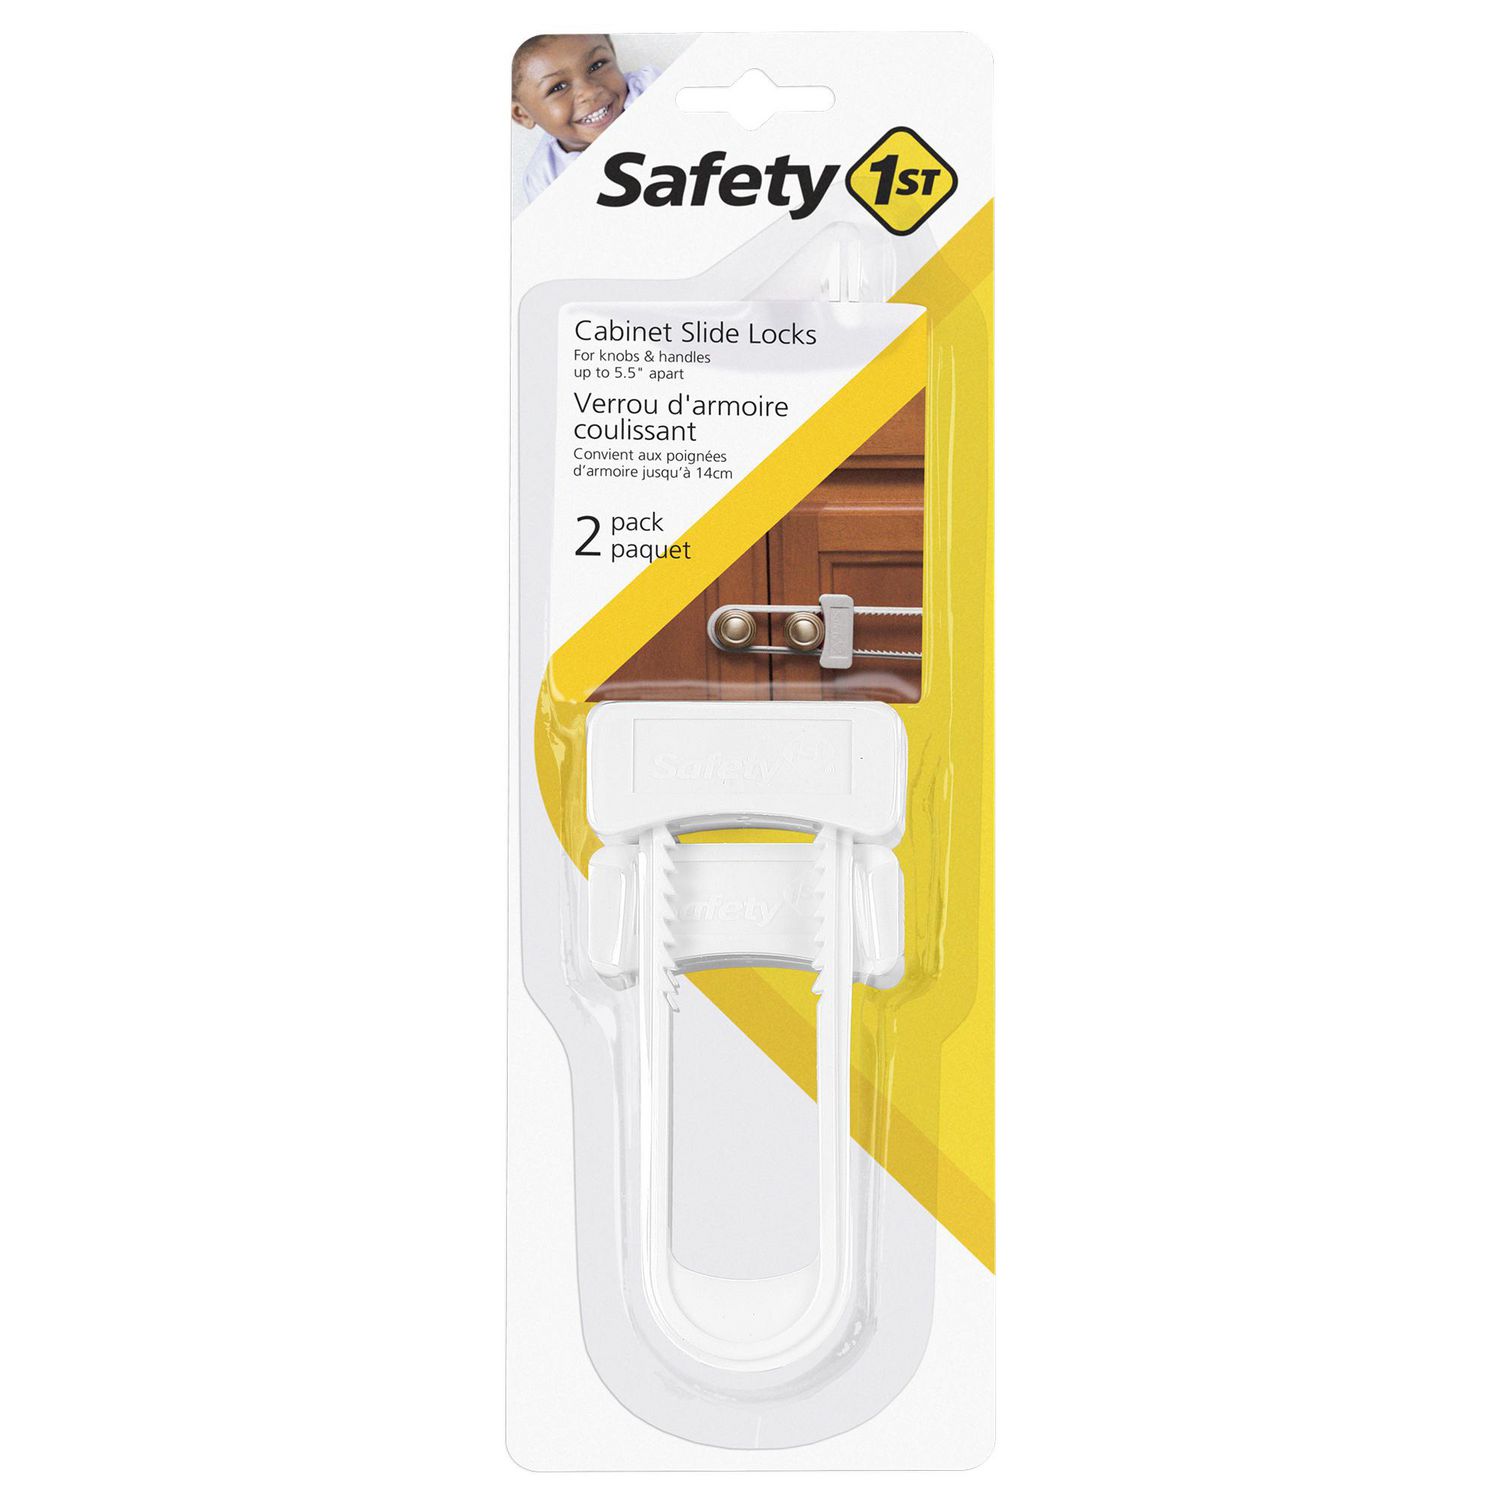 Safety 1st - Trousse de sécurité pour la maison avec bébé, 80 pcs